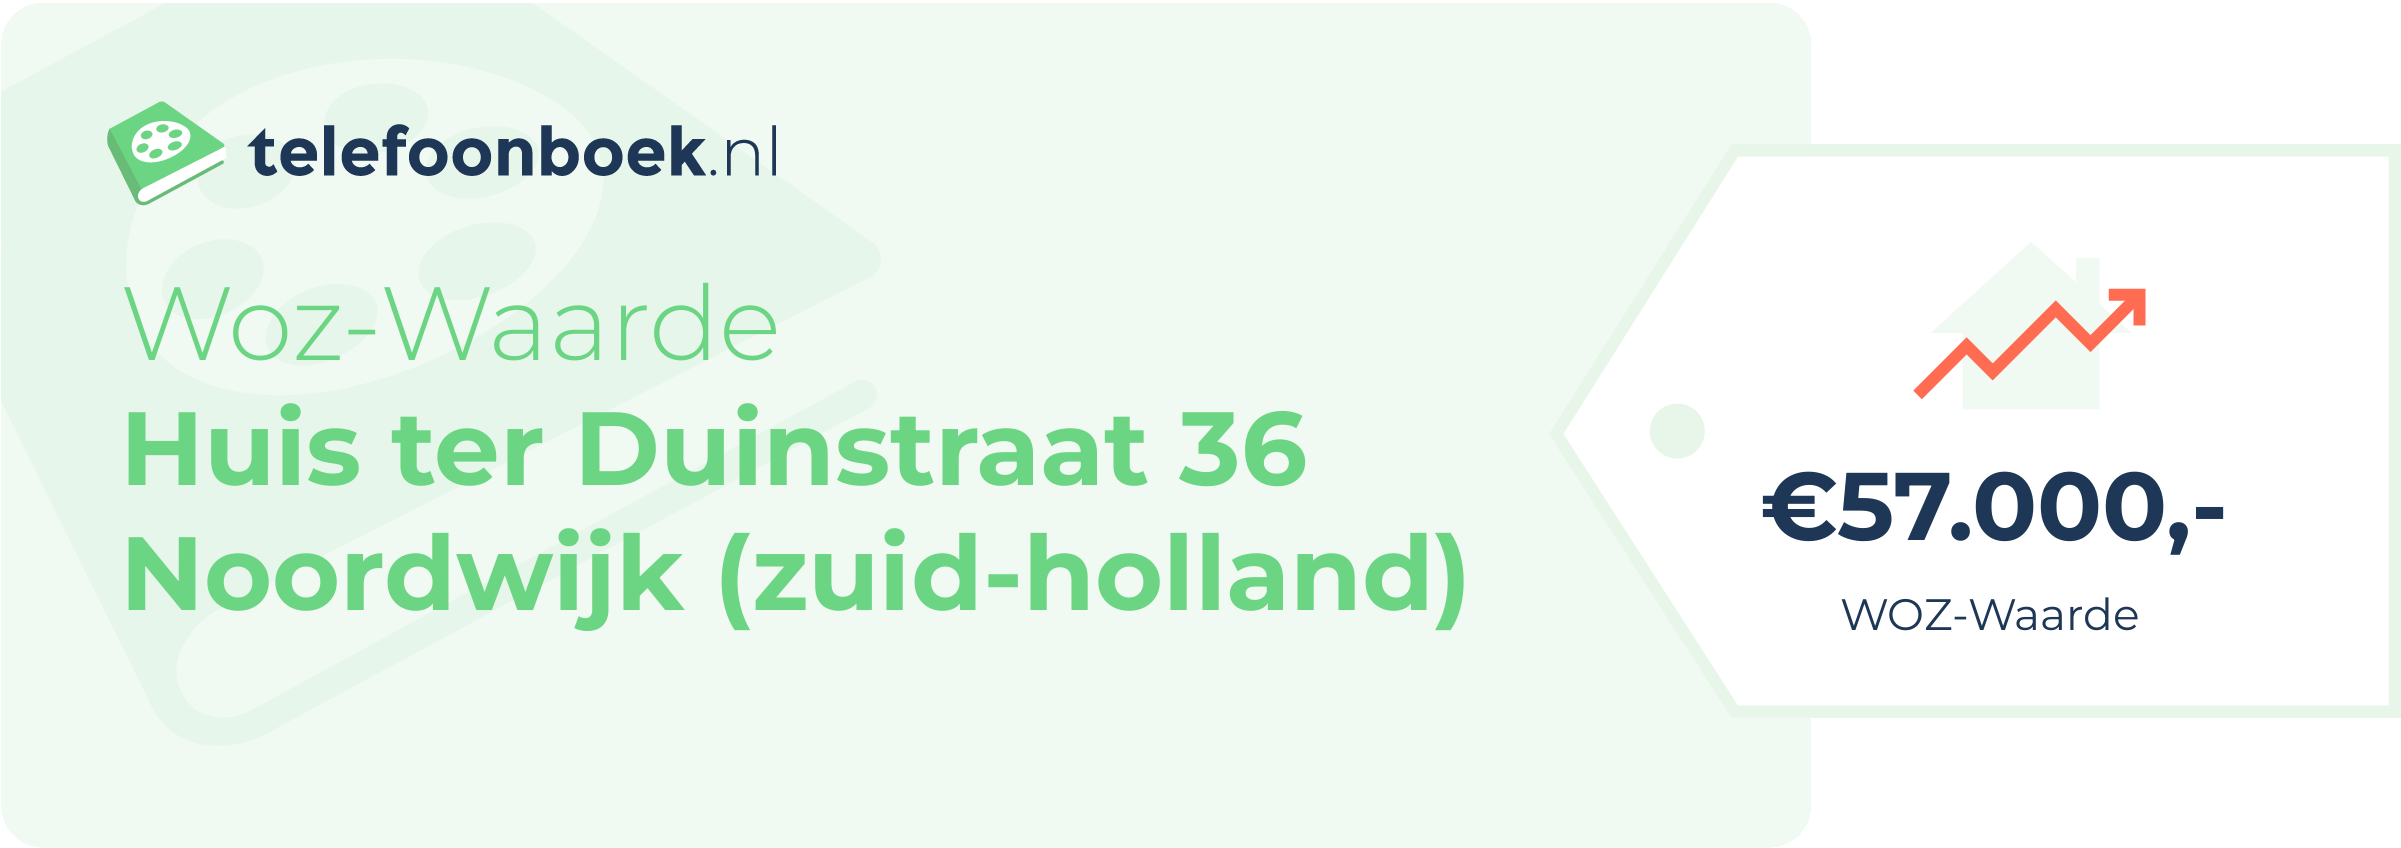 WOZ-waarde Huis Ter Duinstraat 36 Noordwijk (Zuid-Holland)